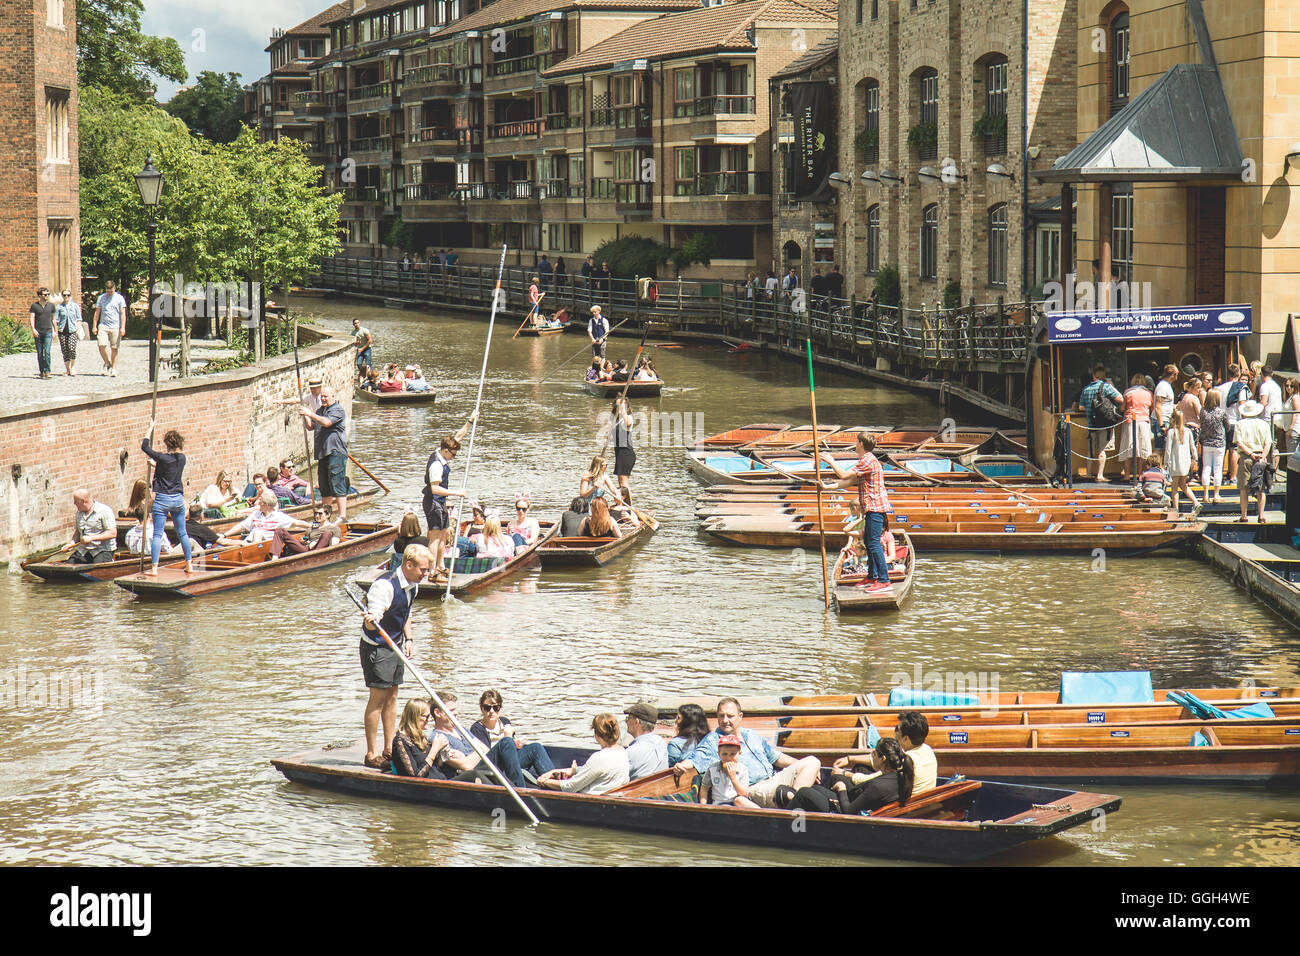 Cambridge-Blick auf den Fluss und die Leute, die Spaß an einem sonnigen Tag Stechkahn fahren Stockfoto